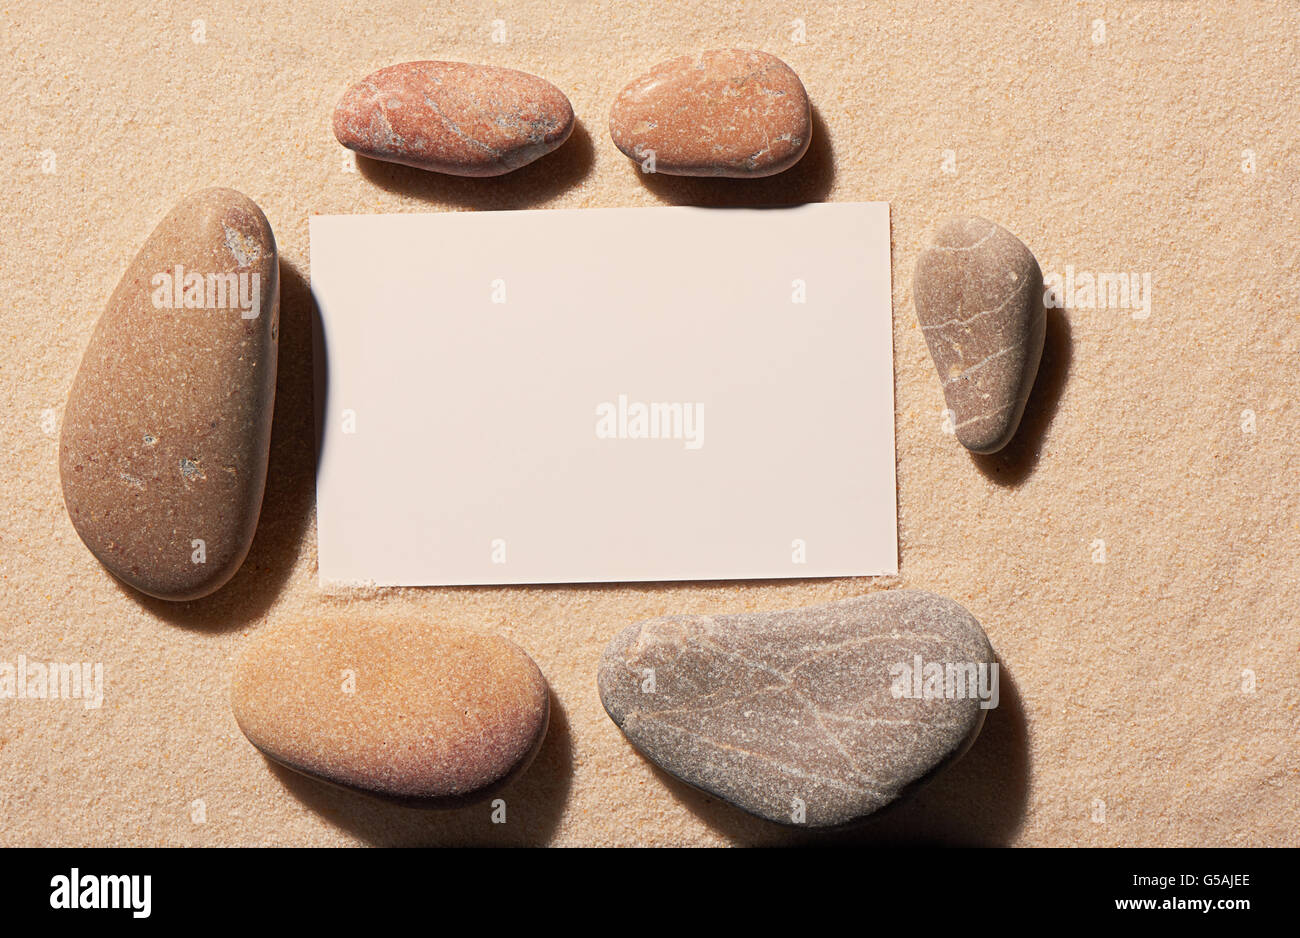 Cadre rectangulaire de six petites et grandes pierres mer blanche avec carte de visite sur le sable. Fond de plage d'été Banque D'Images